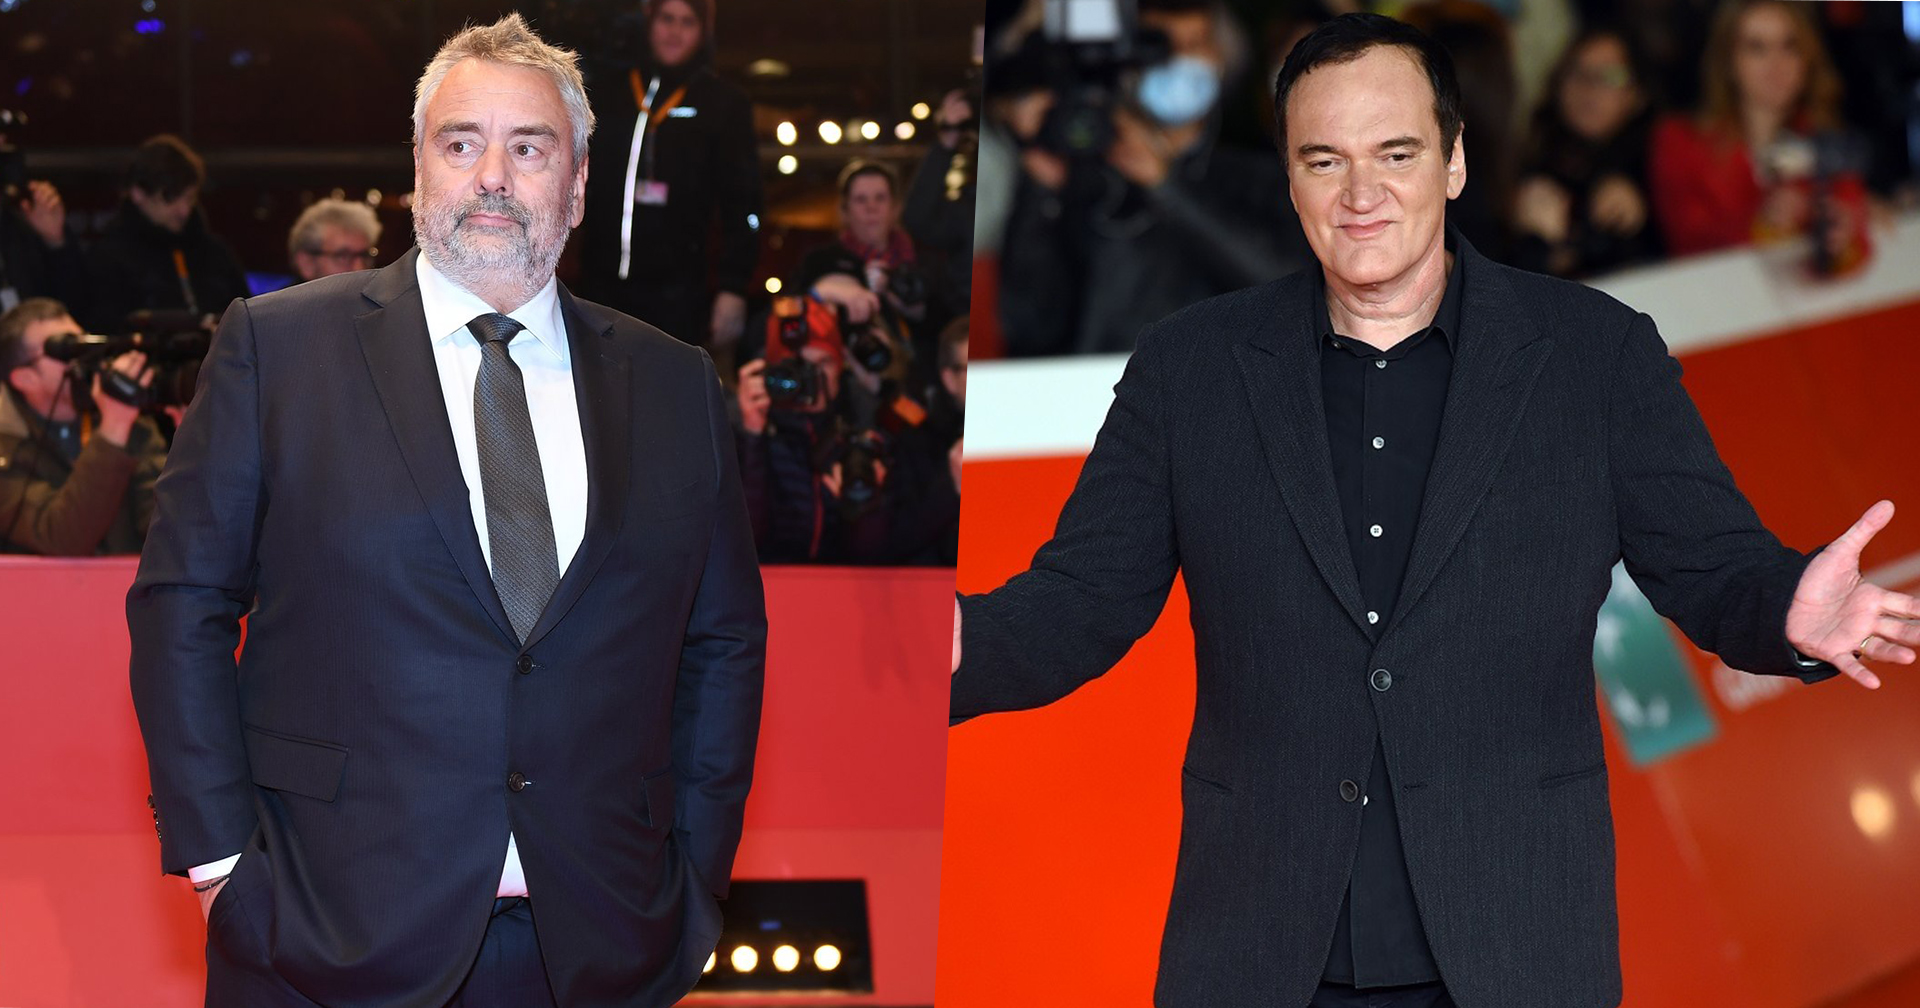 ผู้กำกับ Luc Besson เคลม เป็นเจ้าของไอเดีย Quentin Tarantino เกษียณตัวเองหลังกำกับหนังครบ 10 เรื่อง